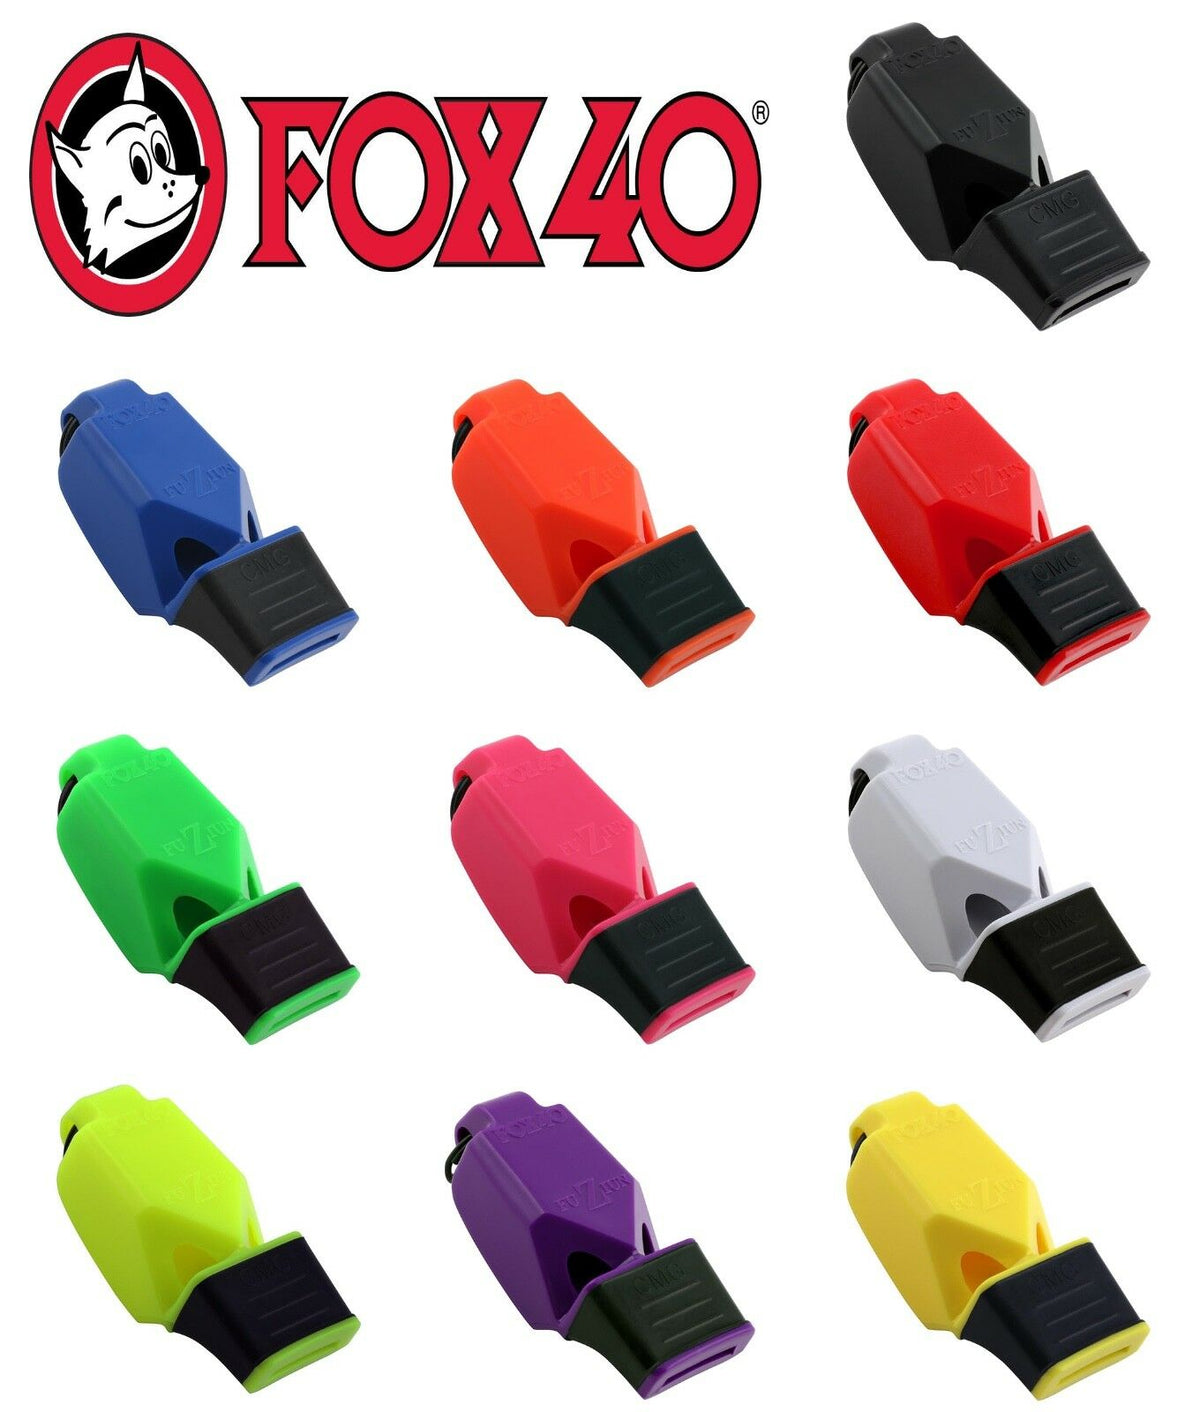 Fox 40 Sonik Blast CMG - Silbato de seguridad con cordón separable, color  negro y blanco